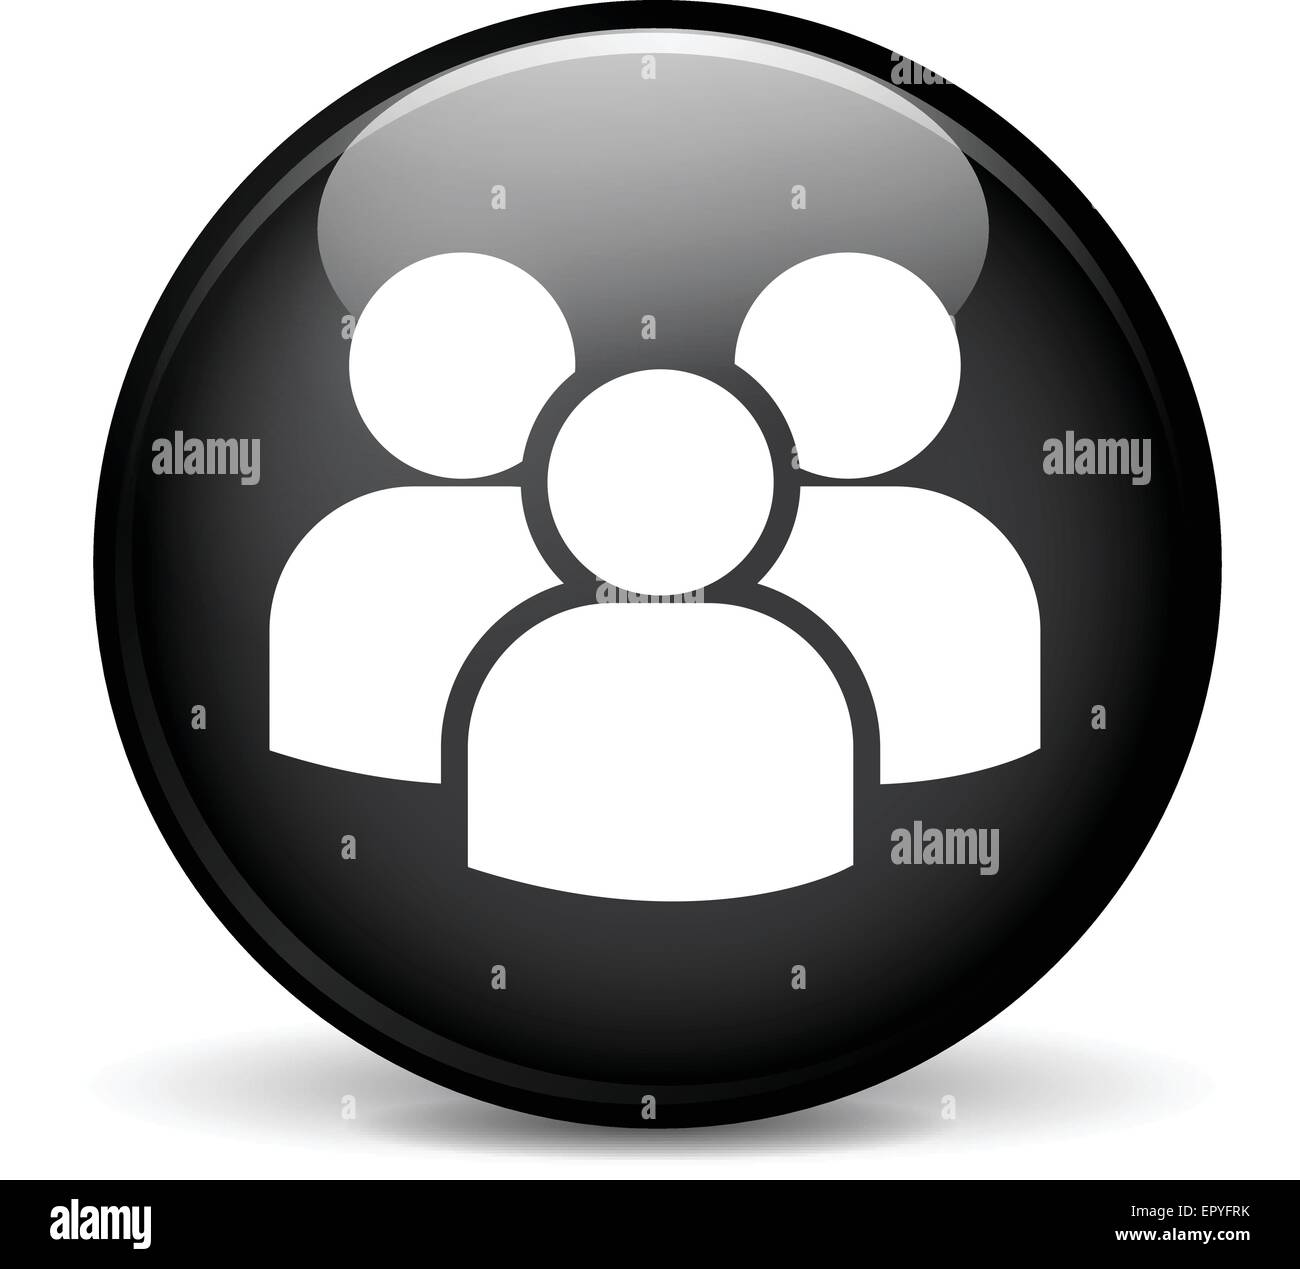 Illustration of group modern design black sphere icon Stock Vector